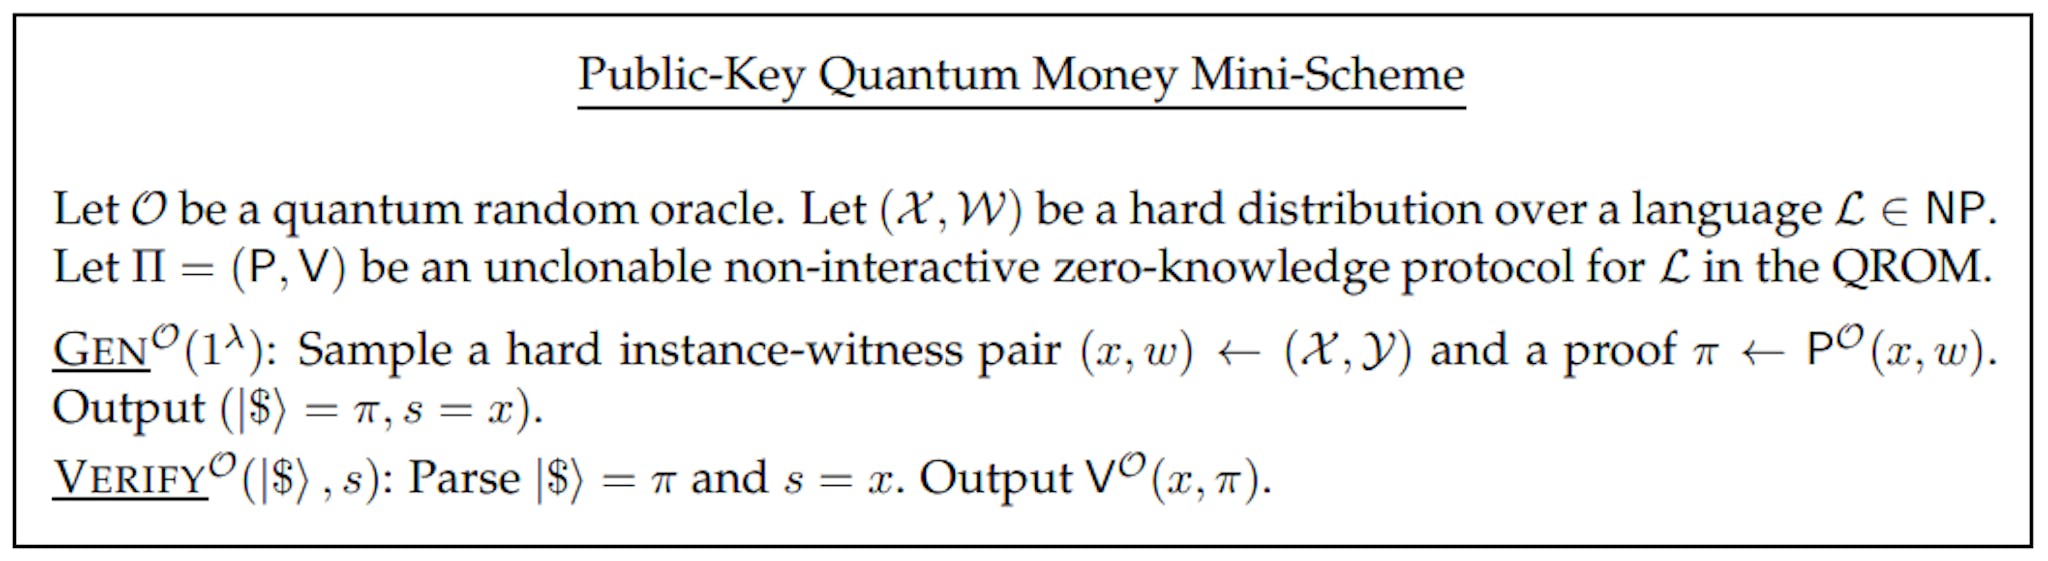 Figure 4 : Mini-schéma d'argent quantique à clé publique issu d'un protocole quantique non interactif non clonable